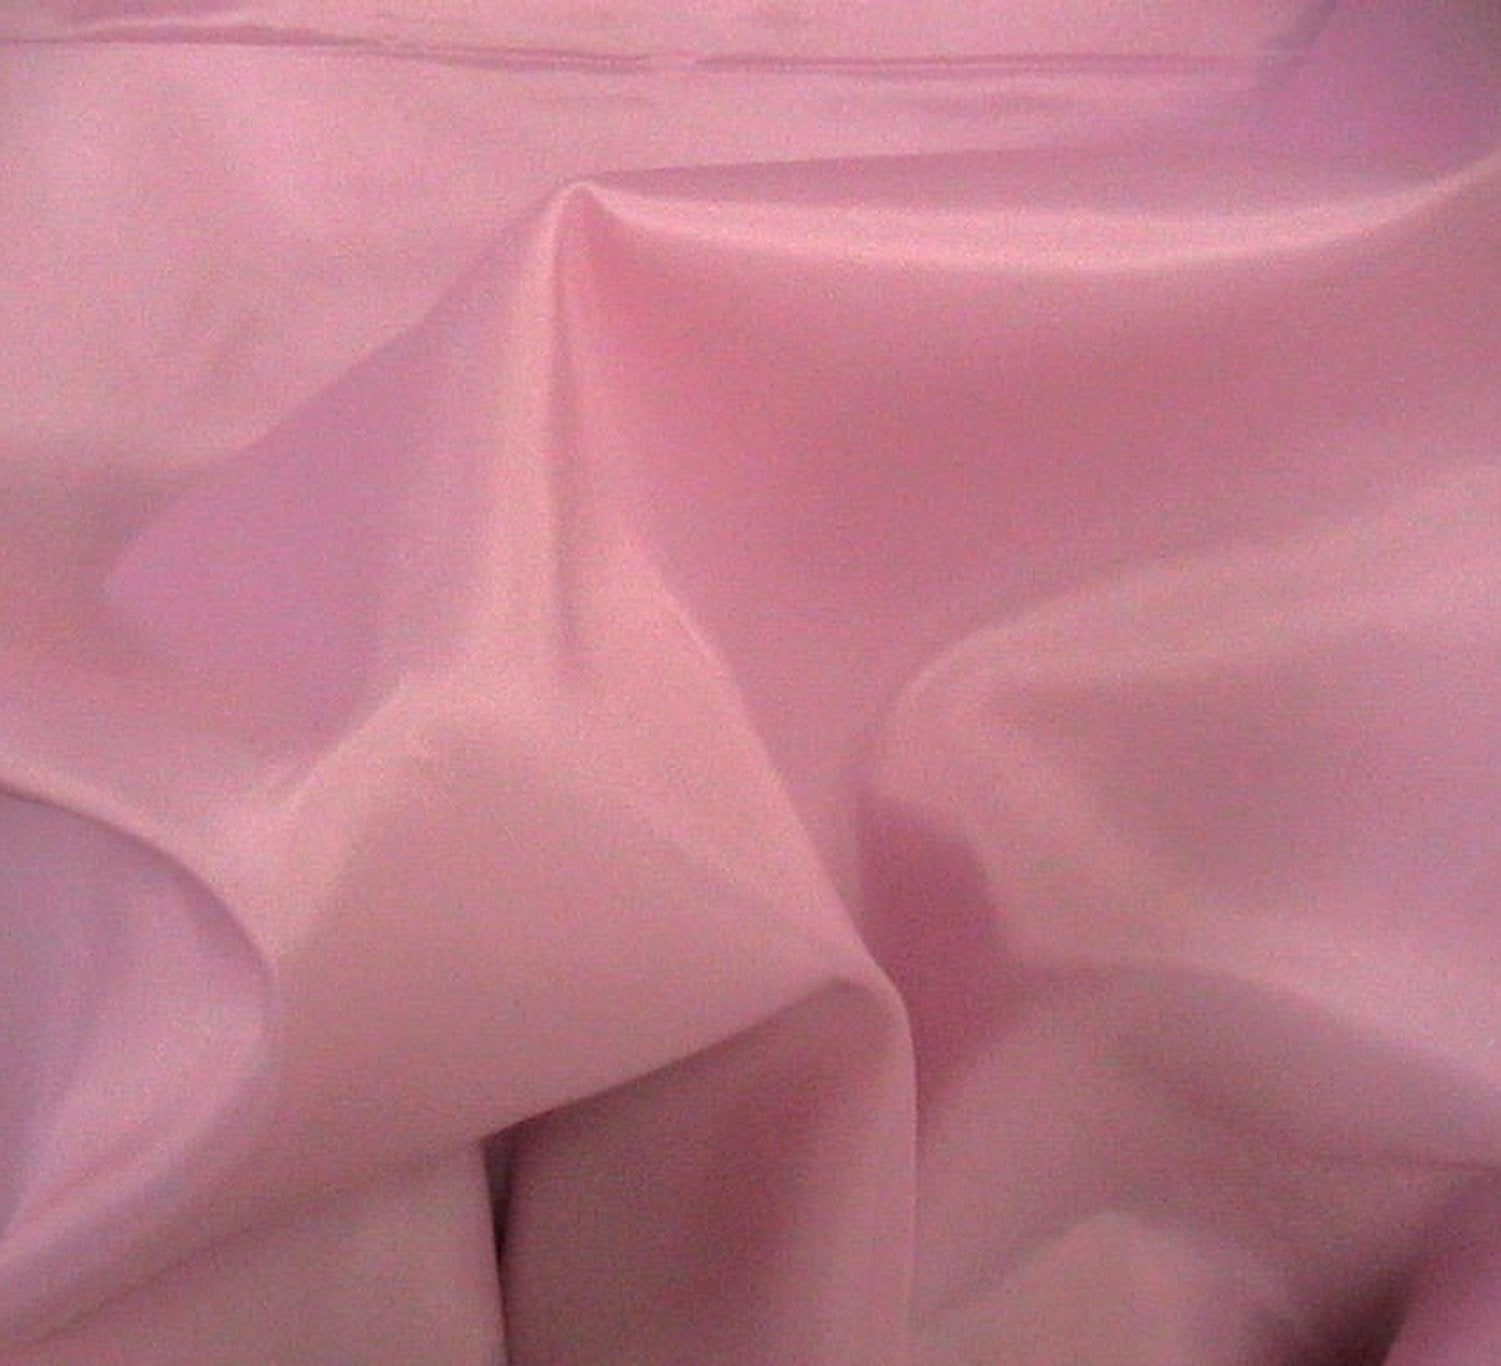 Lining fabric (light pink)